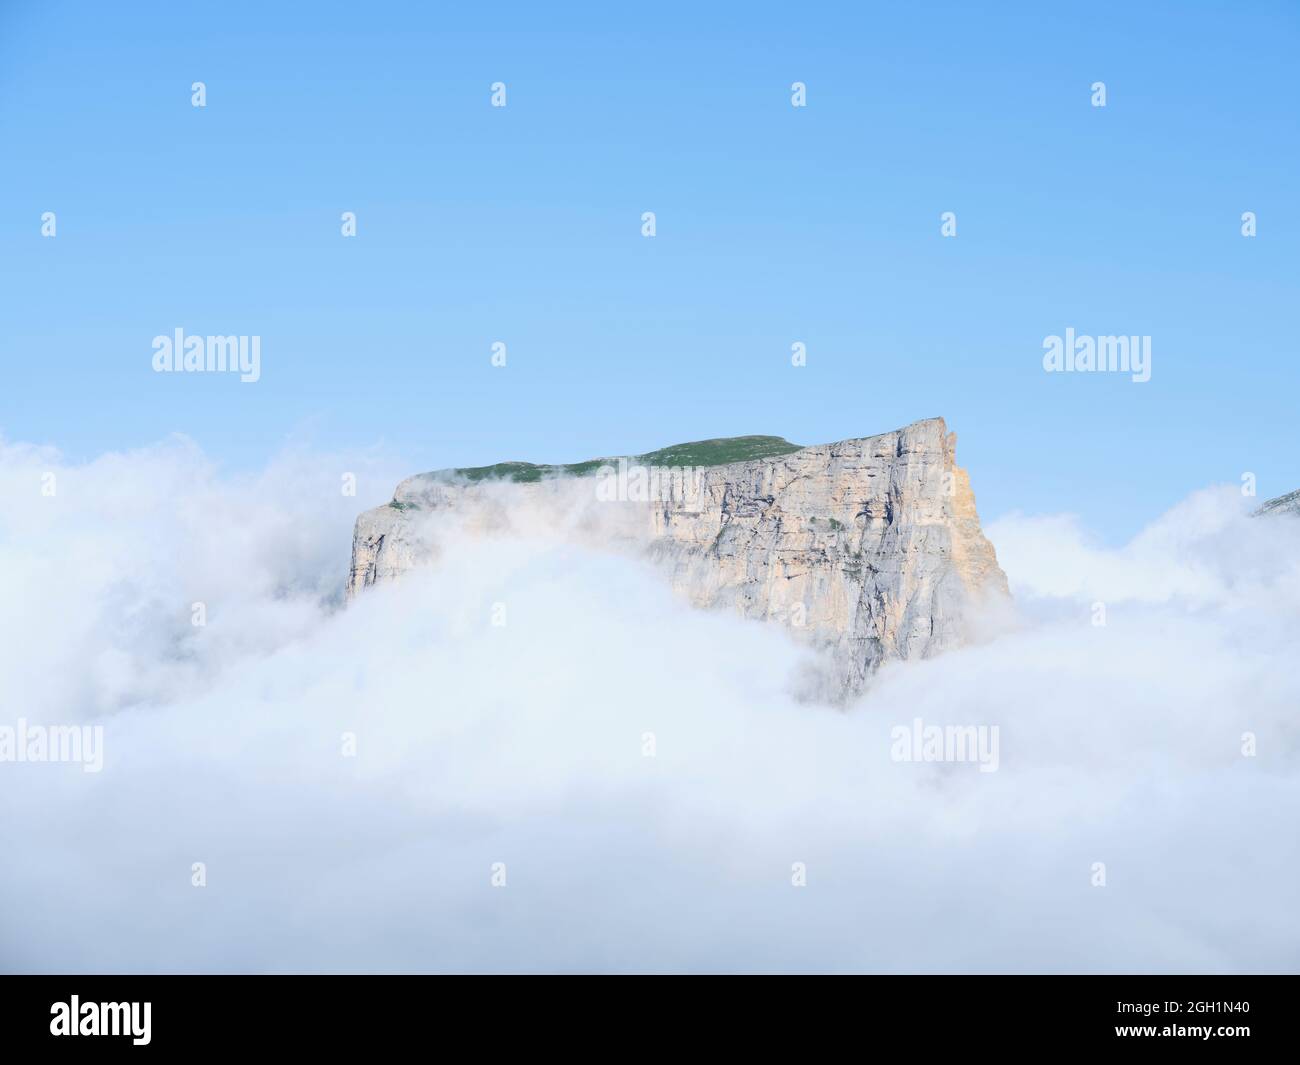 VISTA AEREA. Mont Aiguille, un butte calcareo isolato che emerge da un mare di nuvole. Saint-Martin de Clelles, Monte Vercors, Isère, Francia. Foto Stock